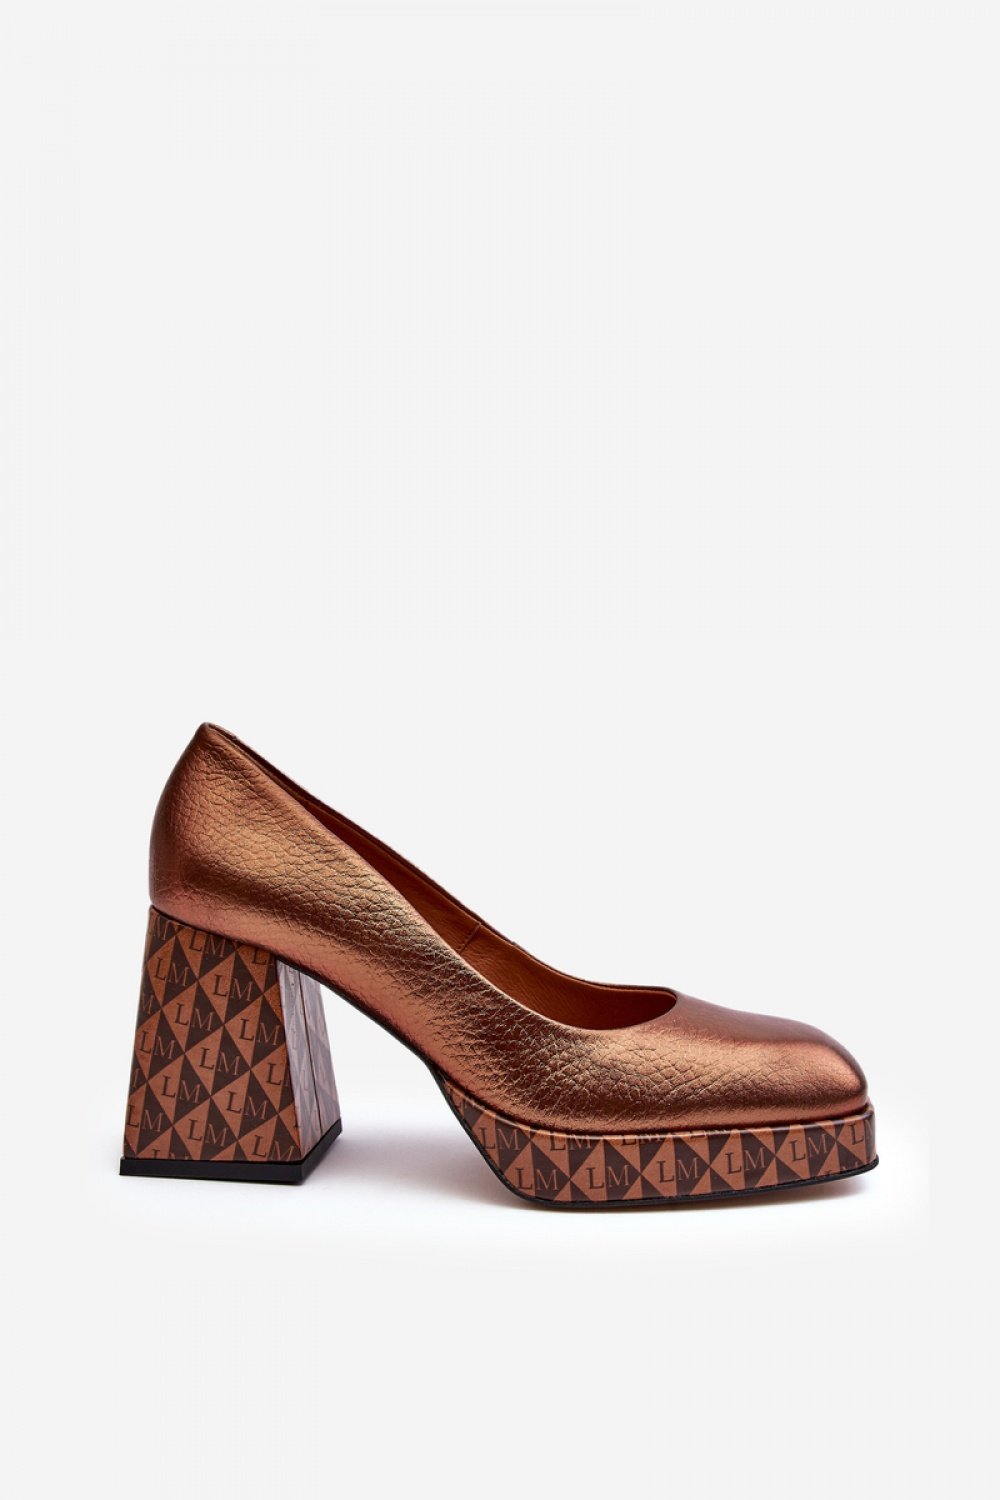  Block heel pumps model 188522 Step in style  brown